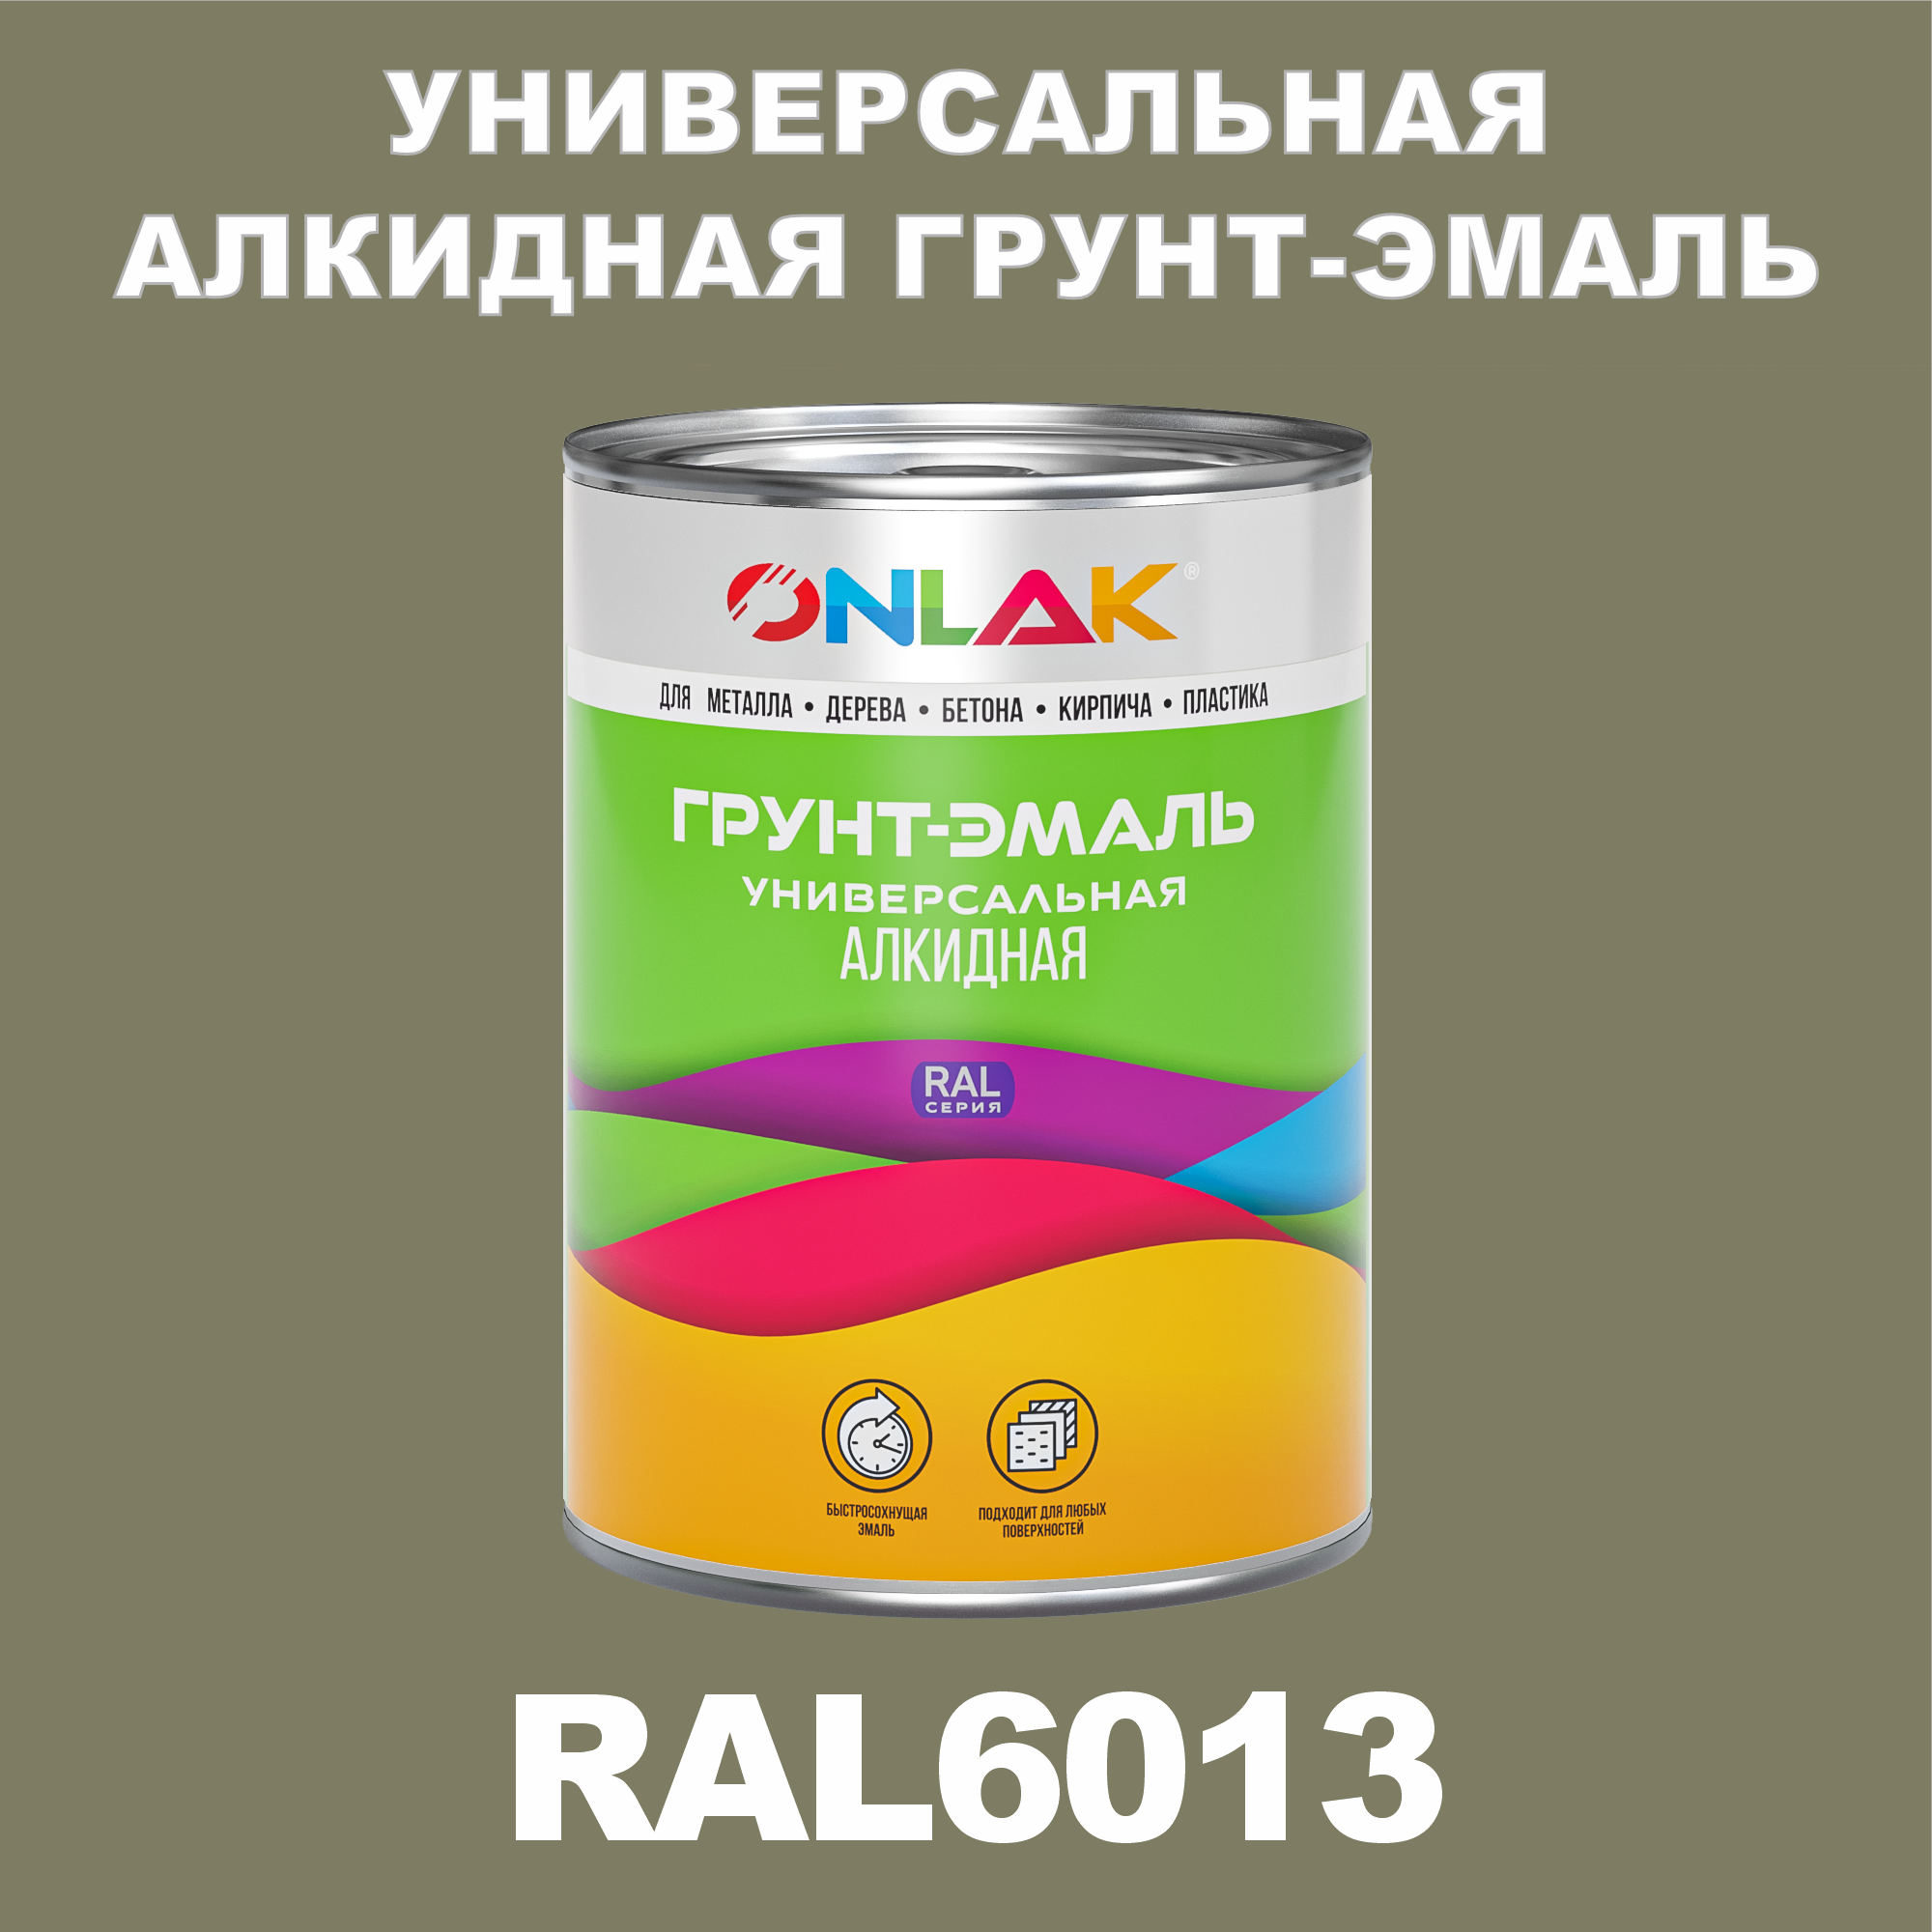 Грунт-эмаль ONLAK 1К RAL6013 антикоррозионная алкидная по металлу по ржавчине 1 кг грунт эмаль skladno по ржавчине алкидная желтая 1 8 кг